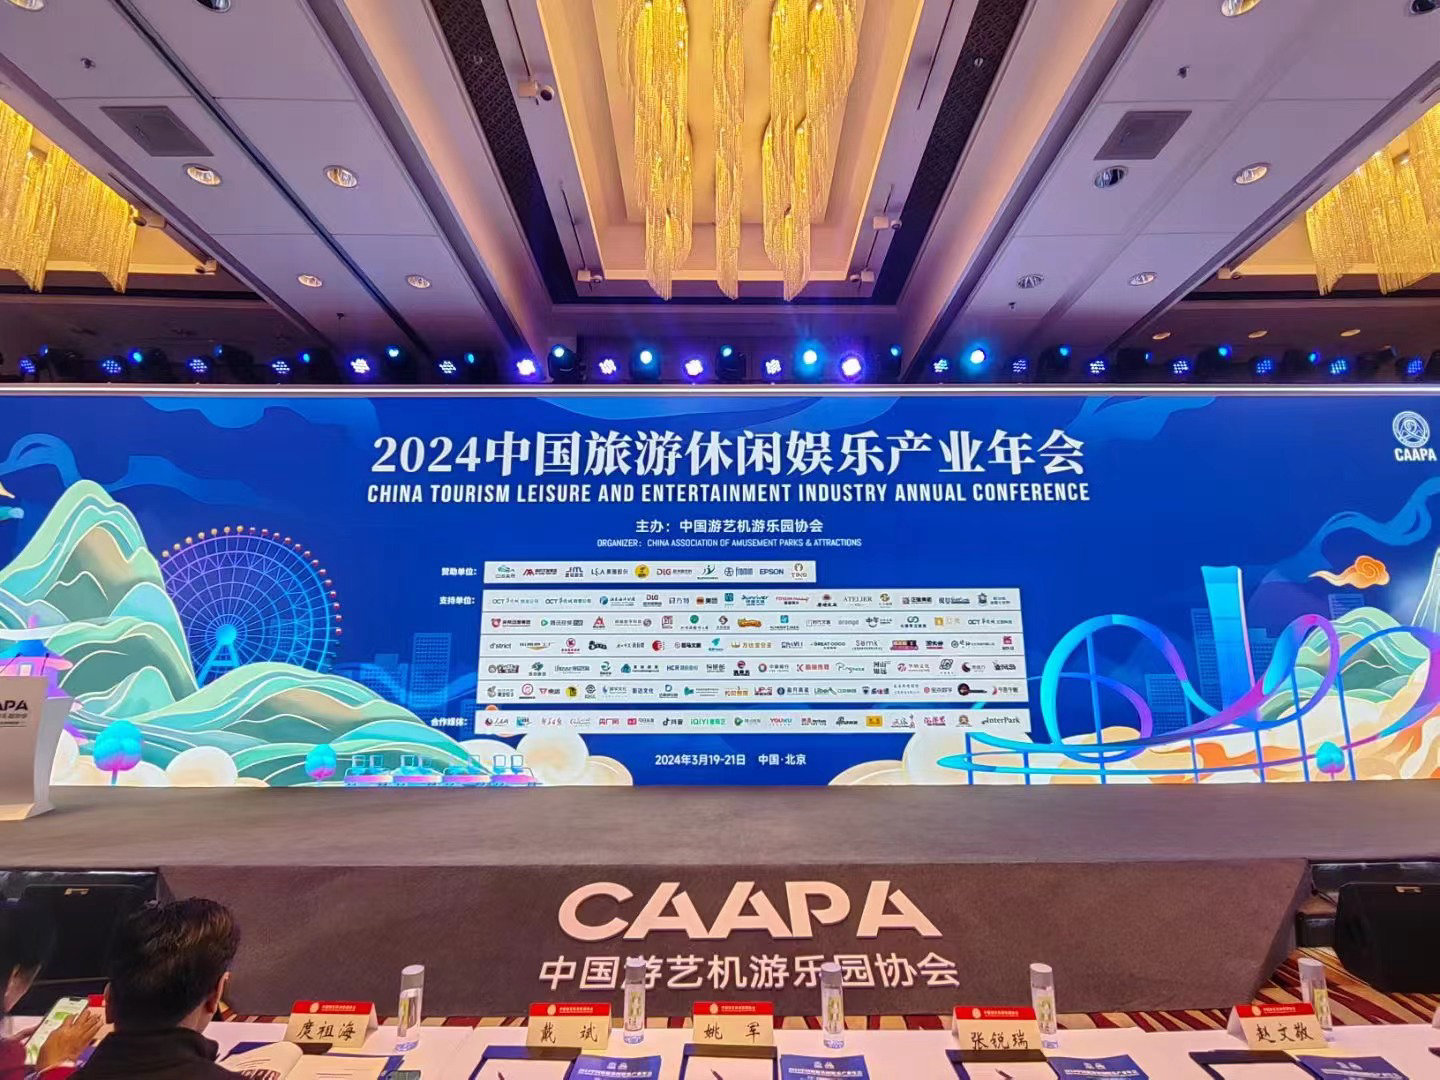 CAAPA2024中國旅遊休閑娛樂產業年會開幕了